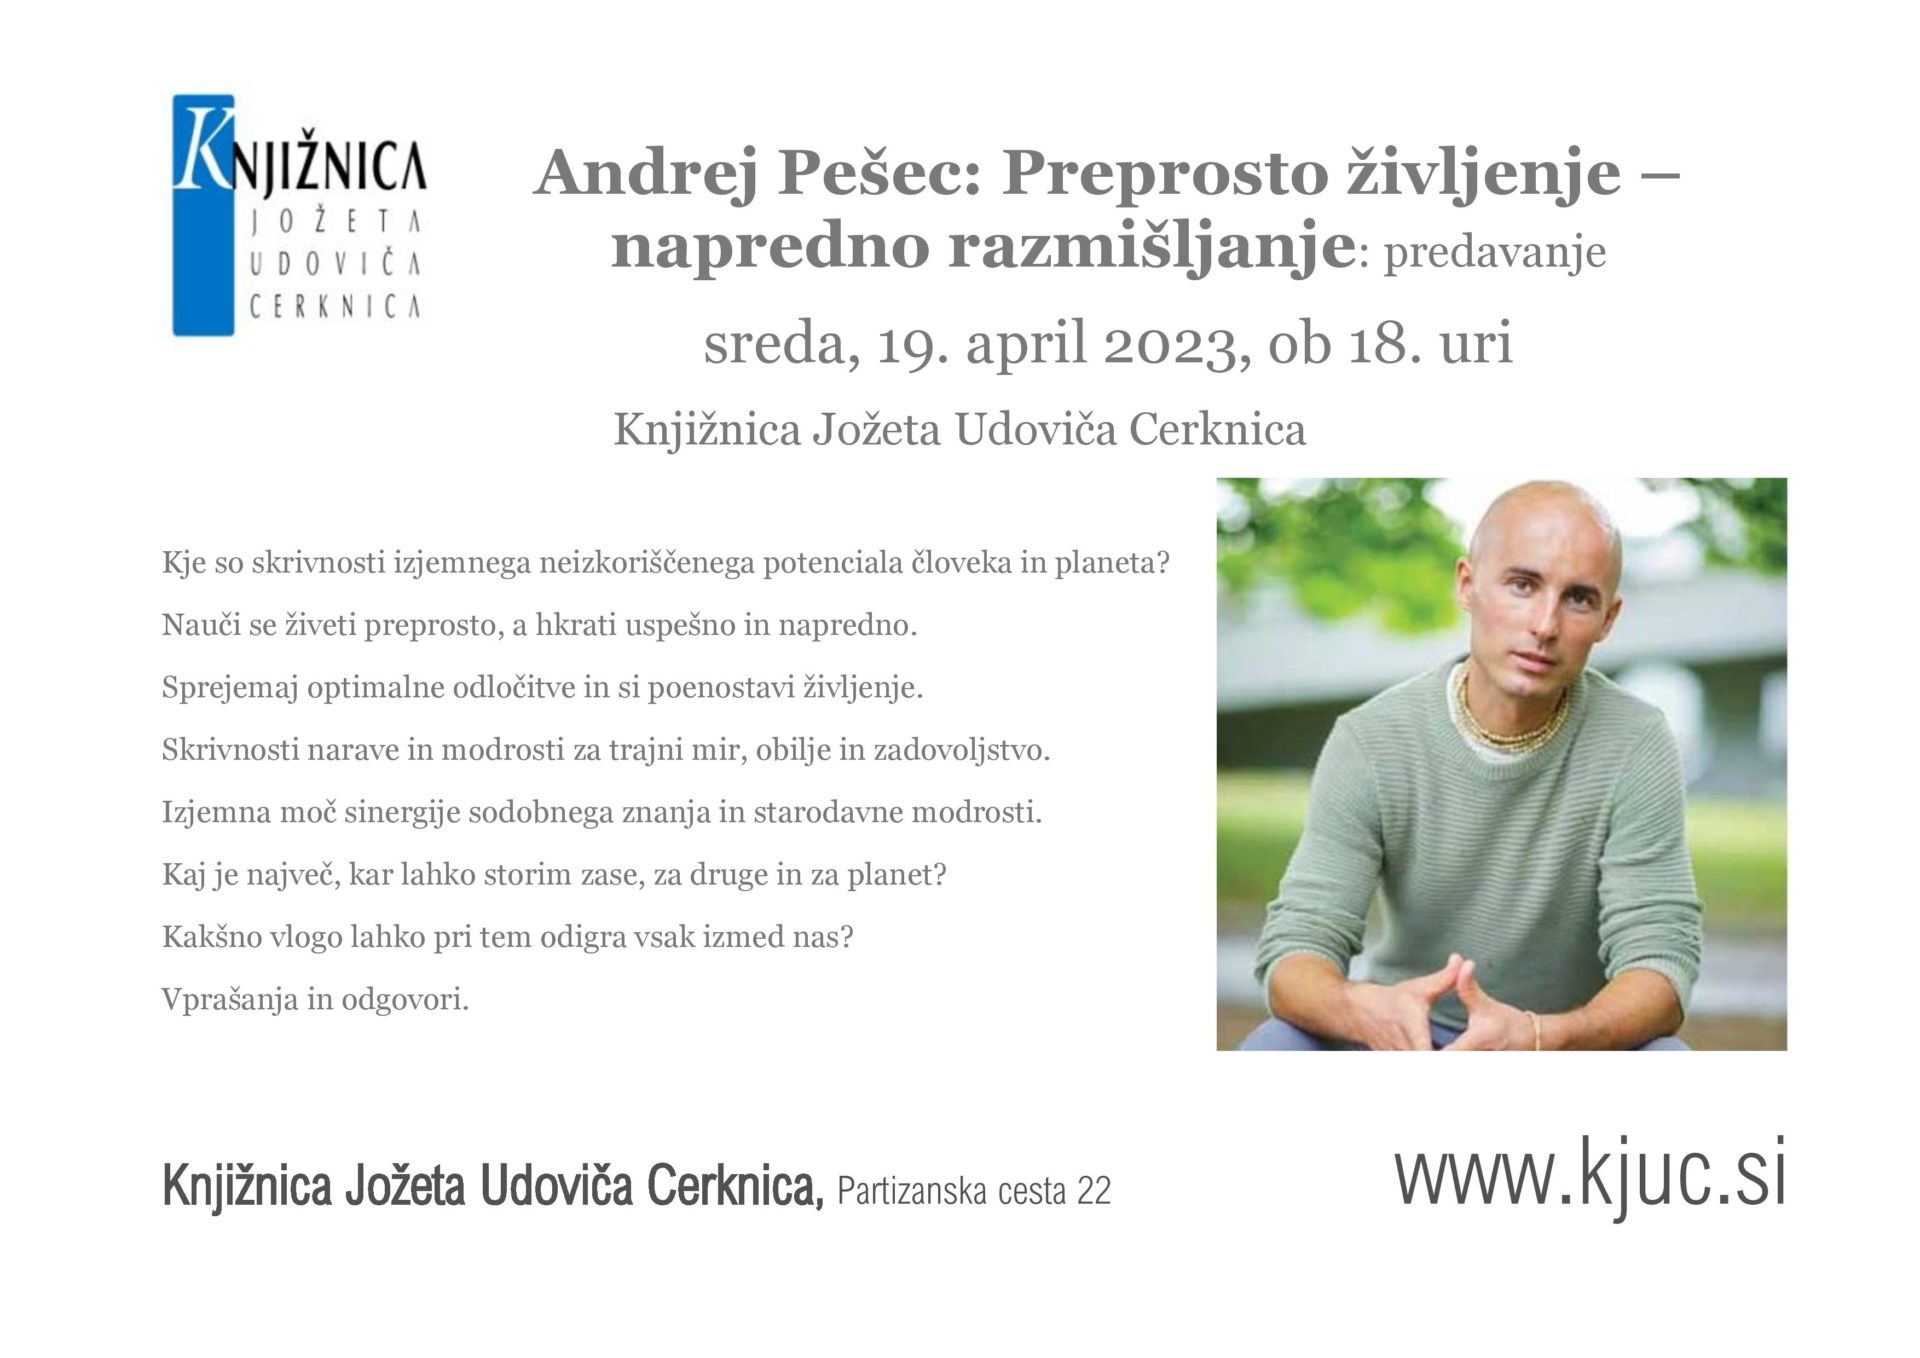 Andrej Pesec page 001 - Andrej Pešec: Preprosto življenje –  napredno razmišljanje: predavanje